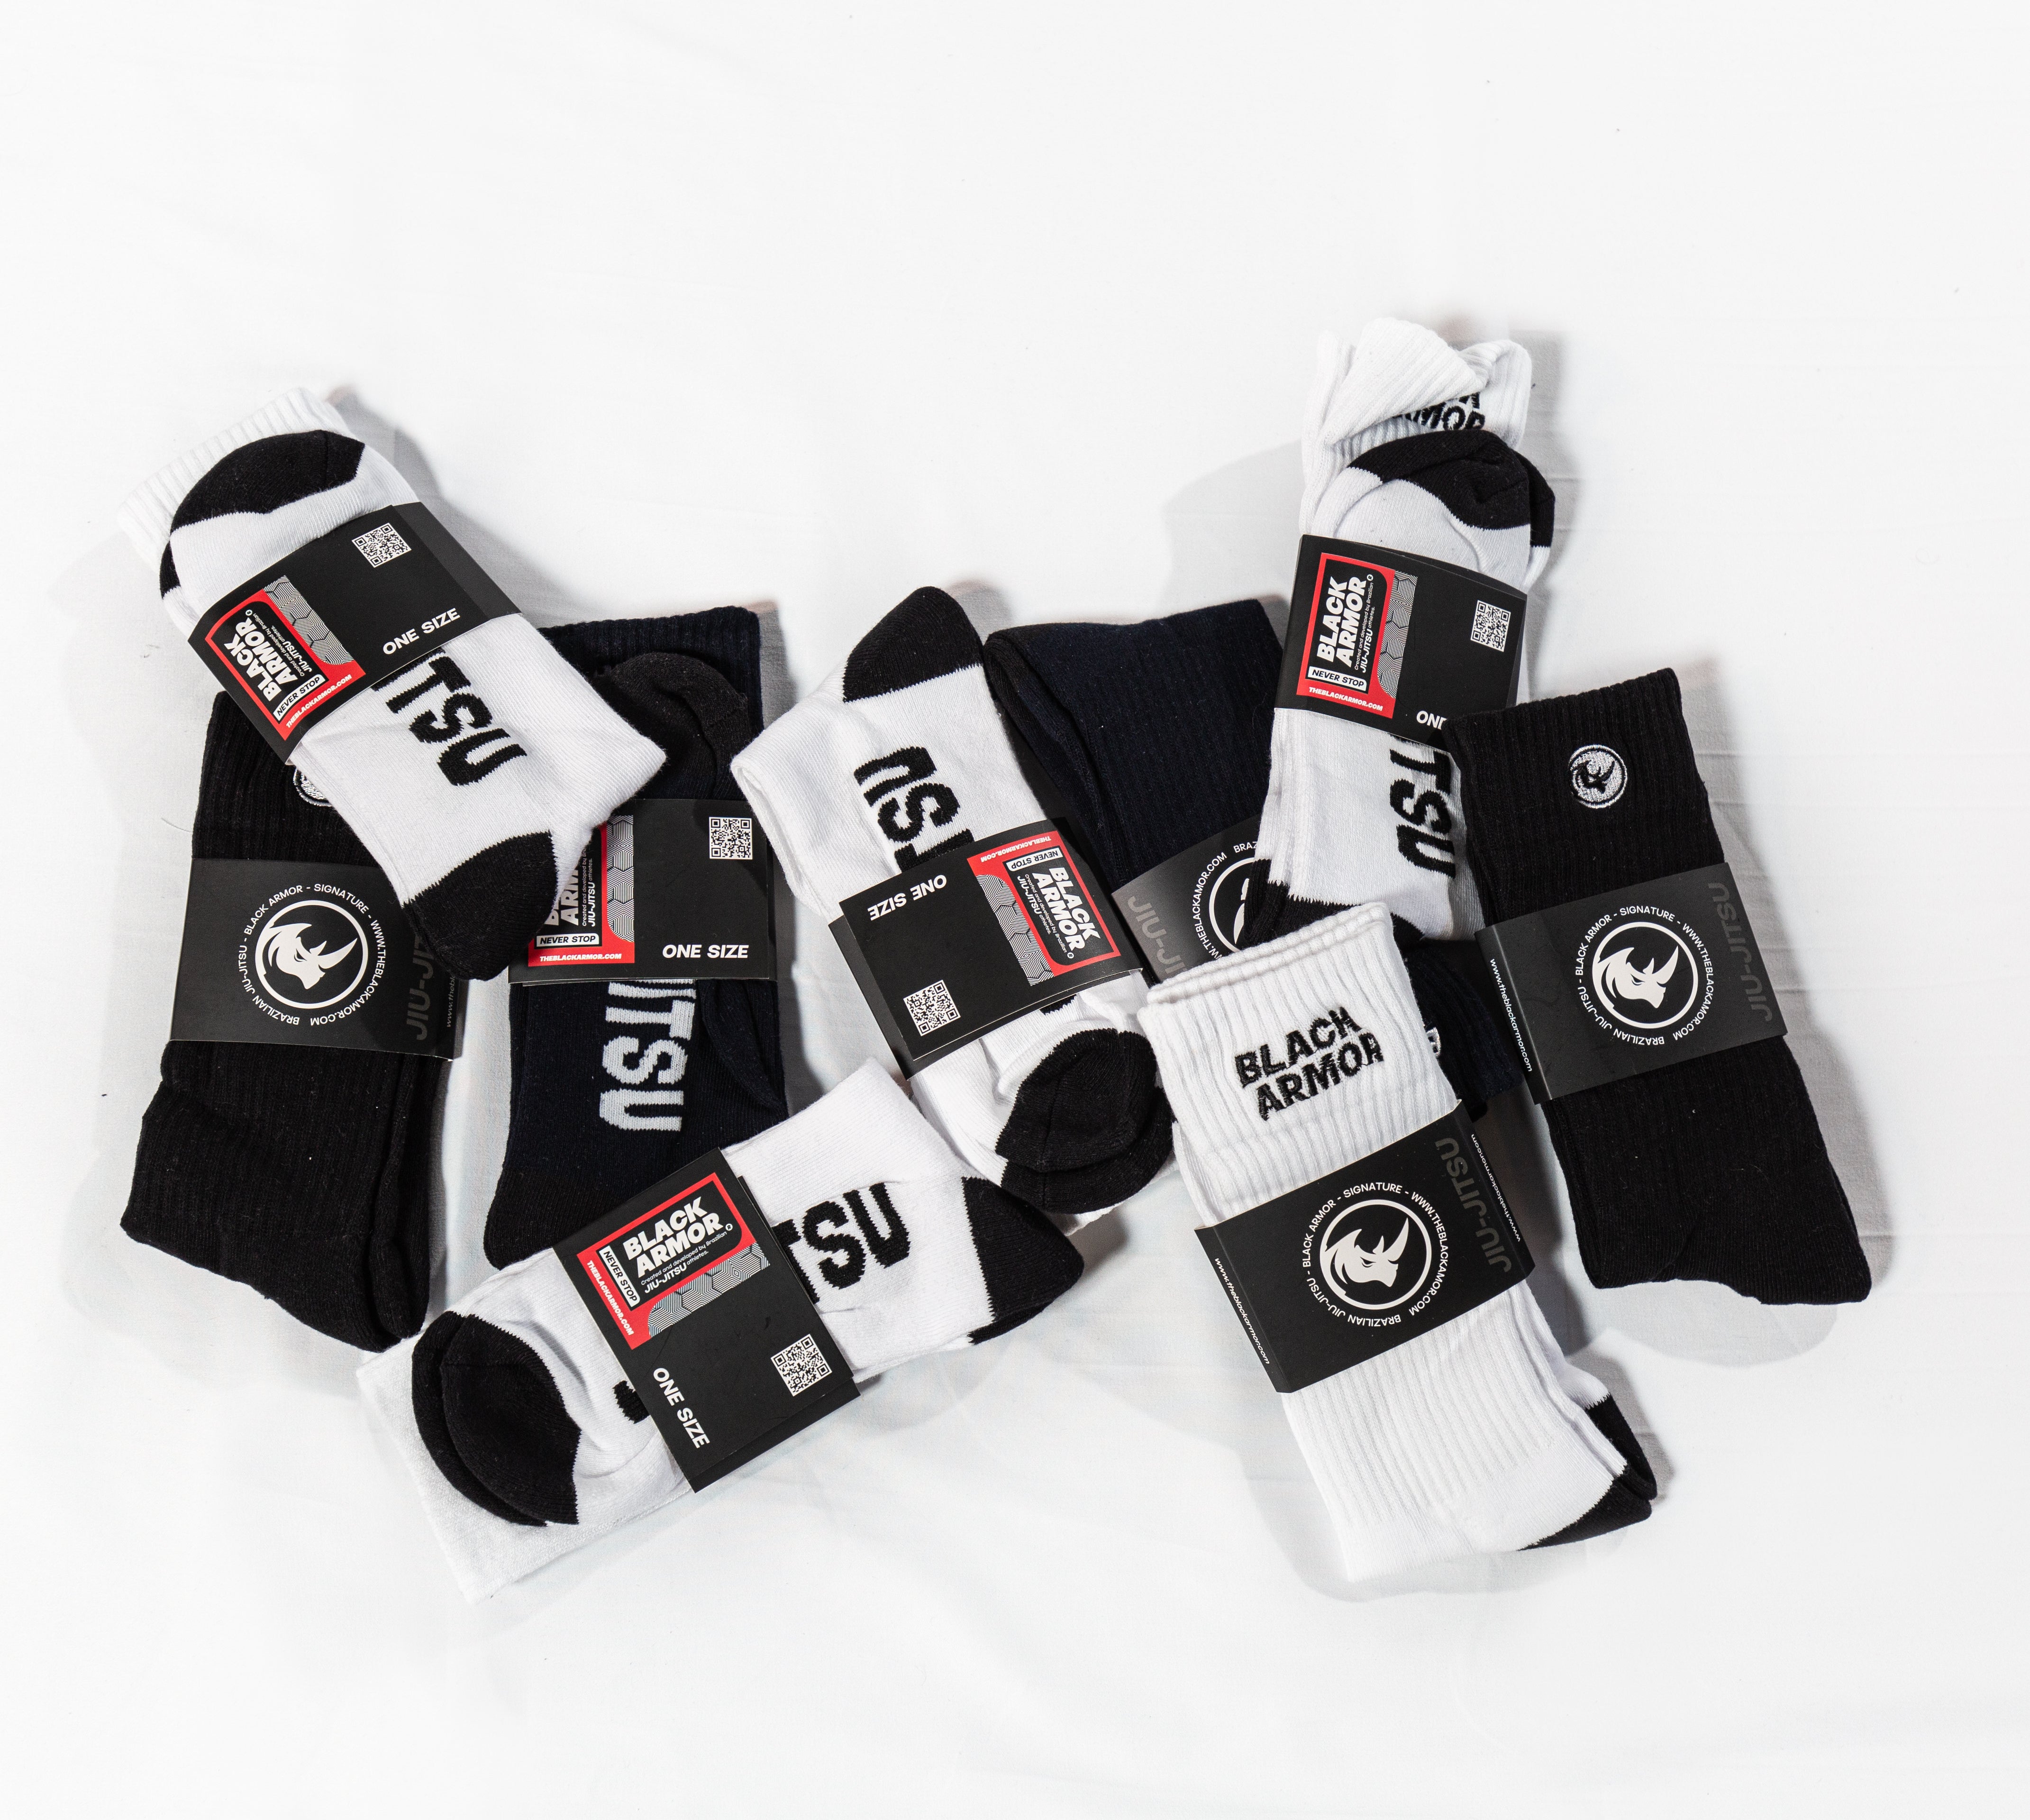 Jiu-jitsu Socks - Pack with 3 Socks